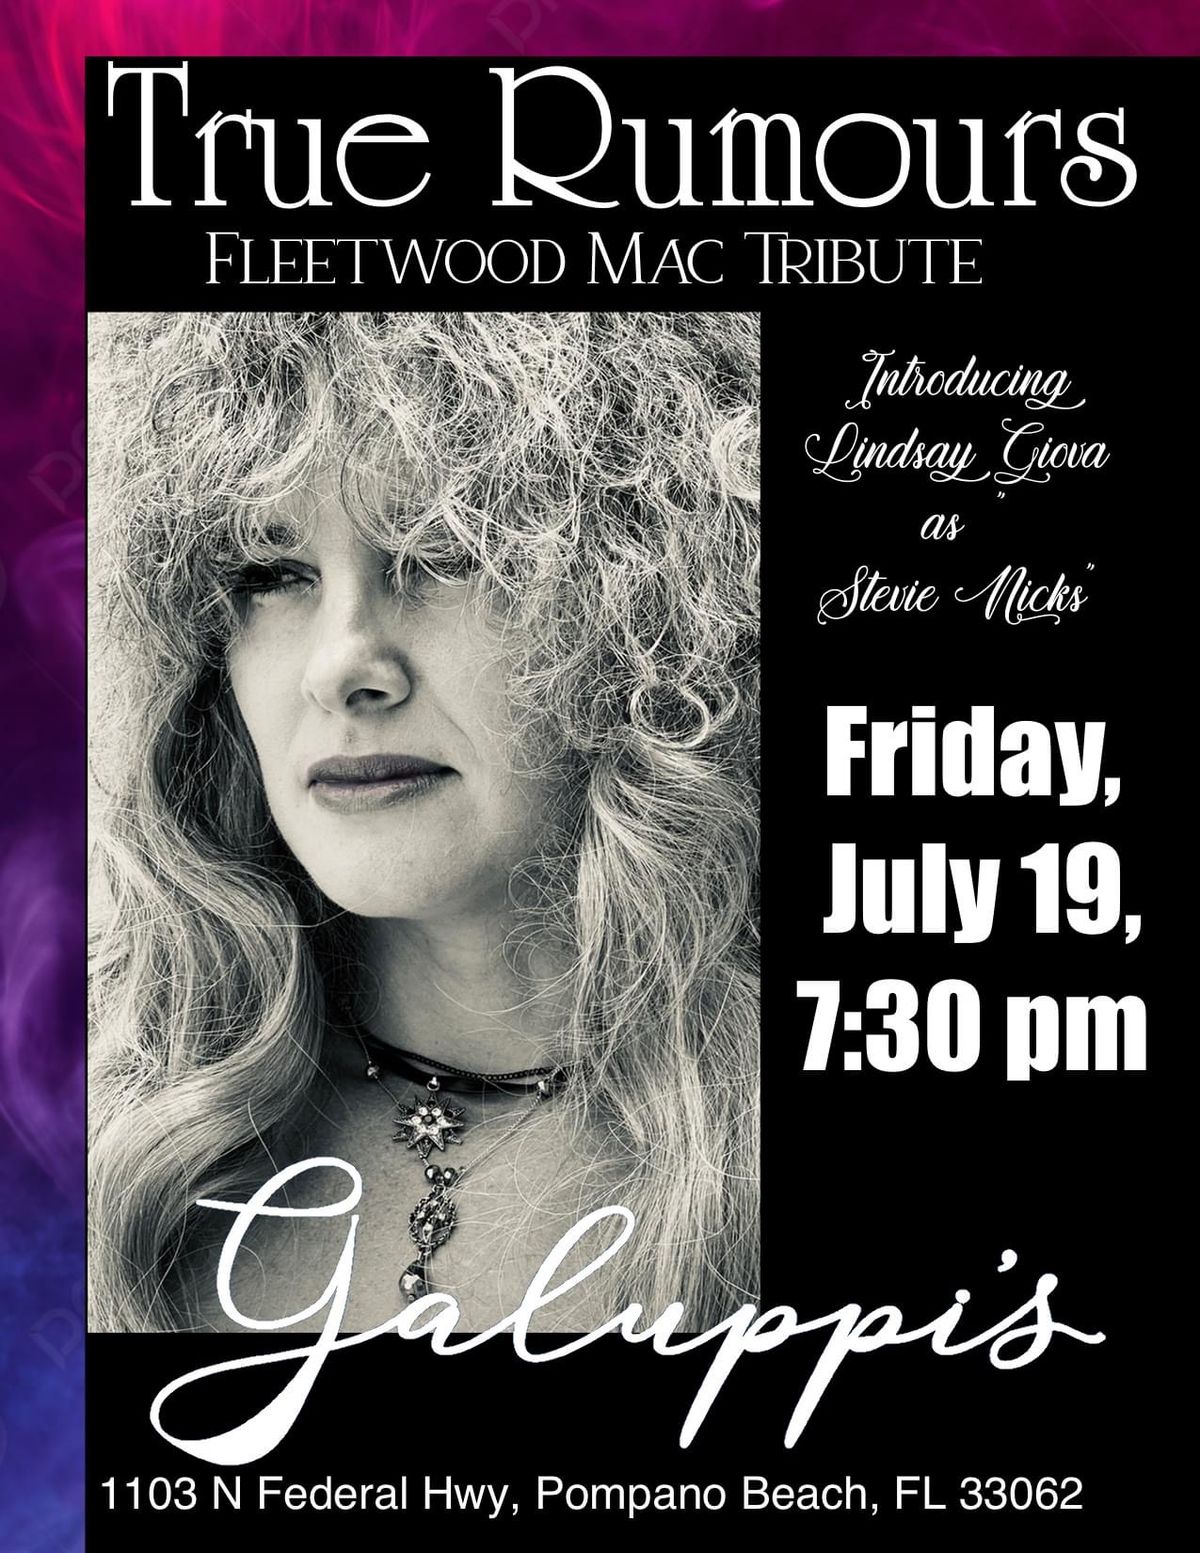 True Rumours Fleetwood Mac Tribute at Galuppi\u2019s Fri. July 19